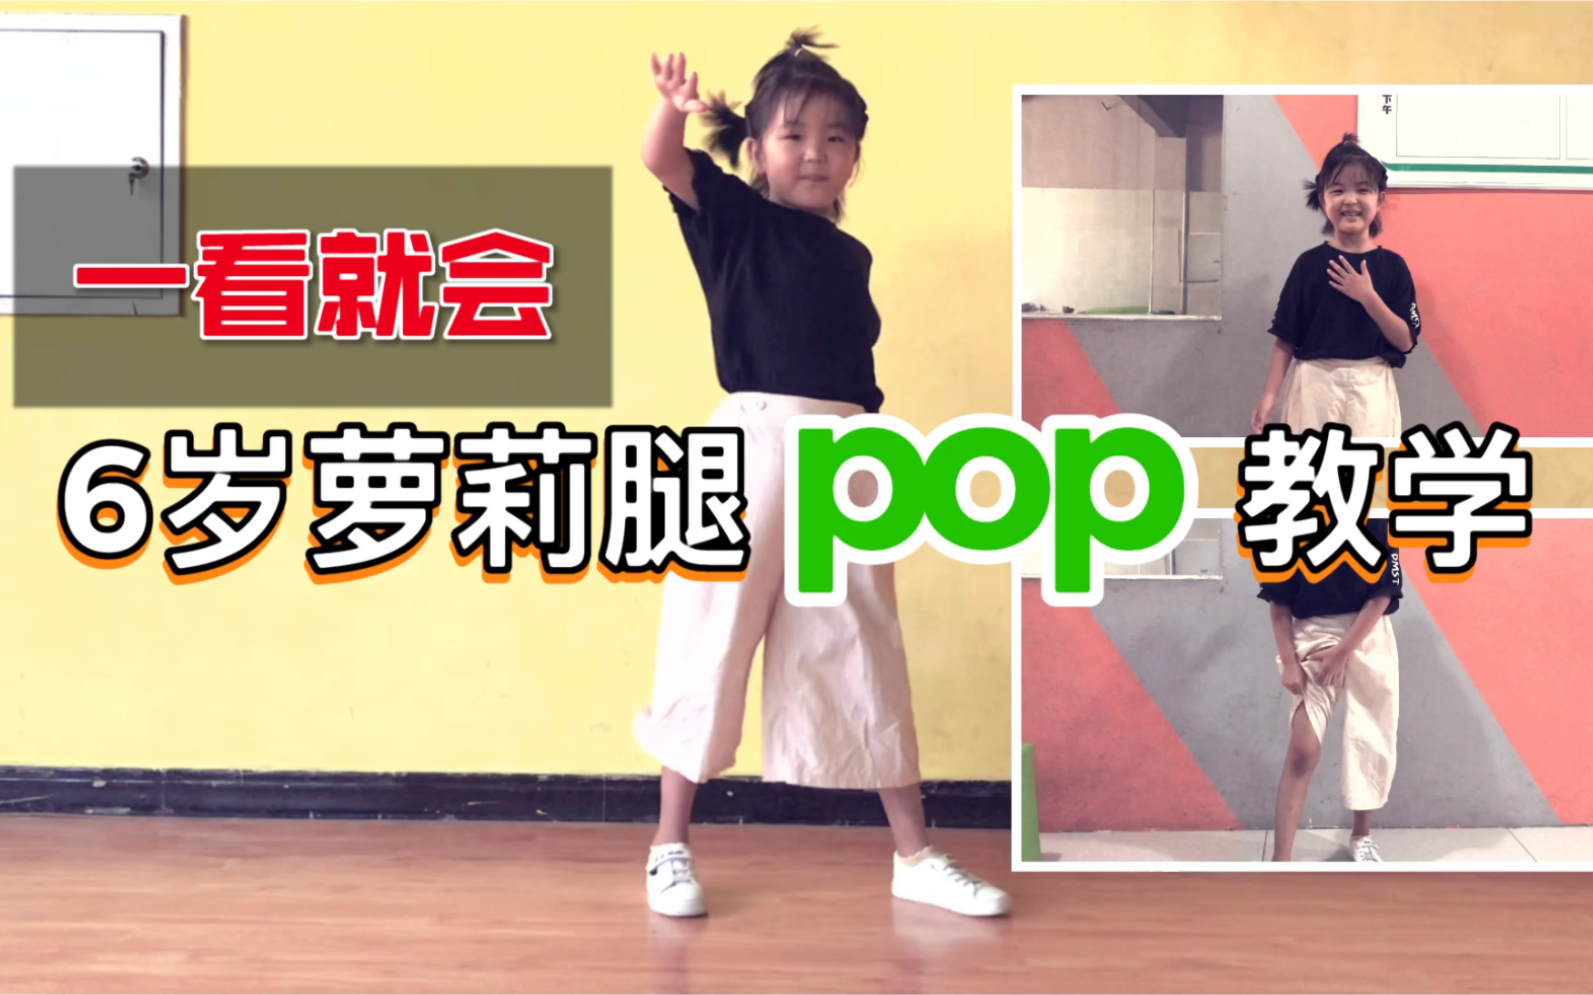 【新手宝典】第4期 popping机械舞6岁小女生腿部pop教学~